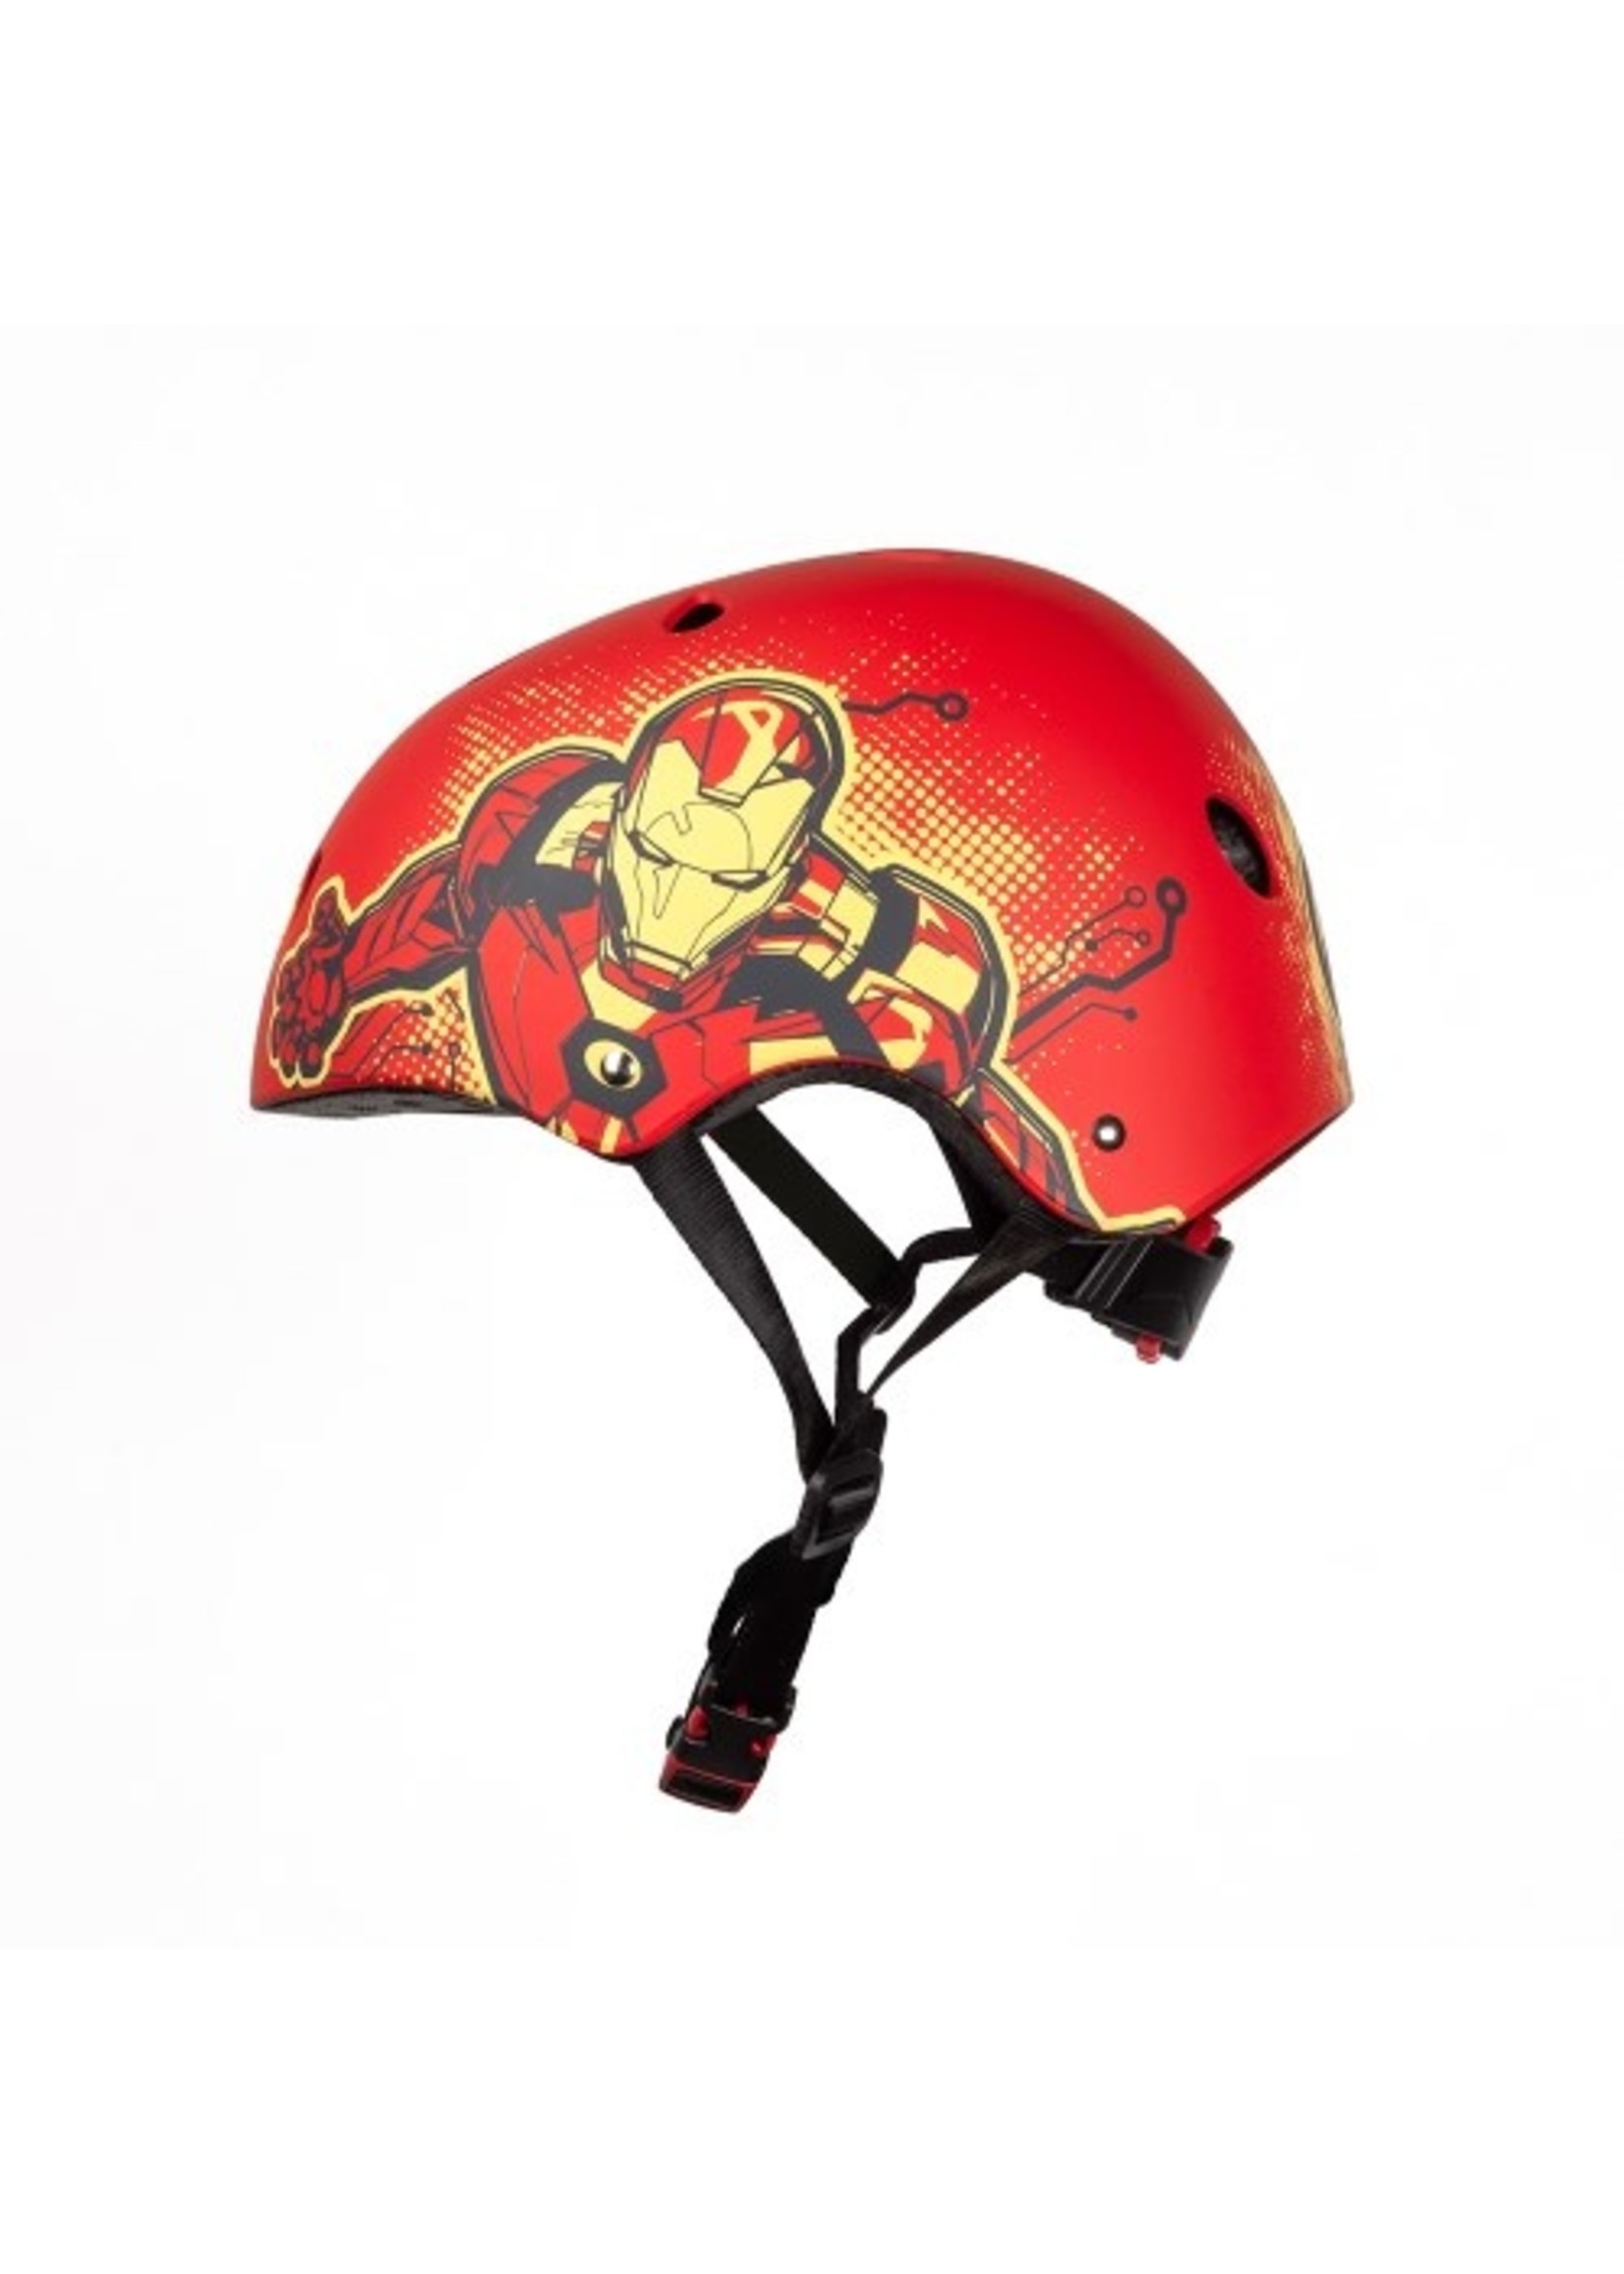 Marvel Ironman skate helmet from Marvel red